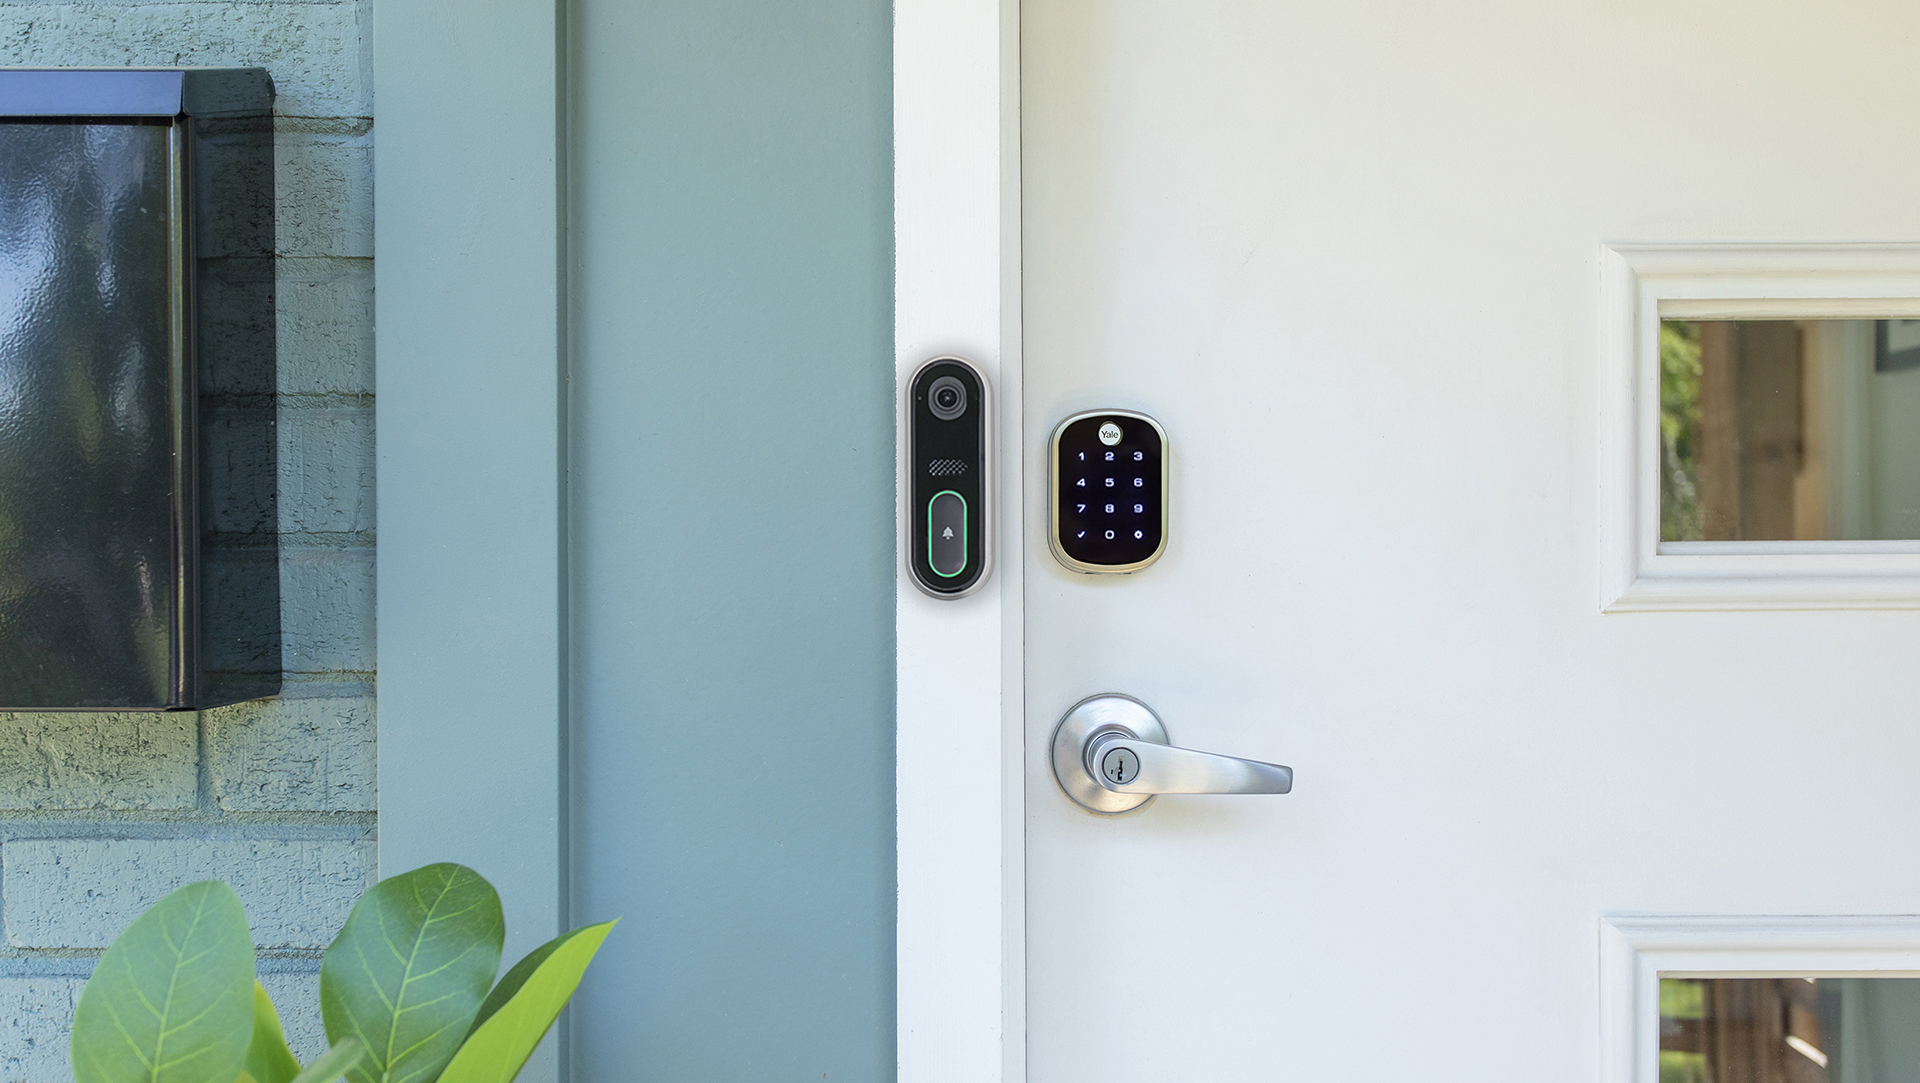 CPI Video Doorbell Pro